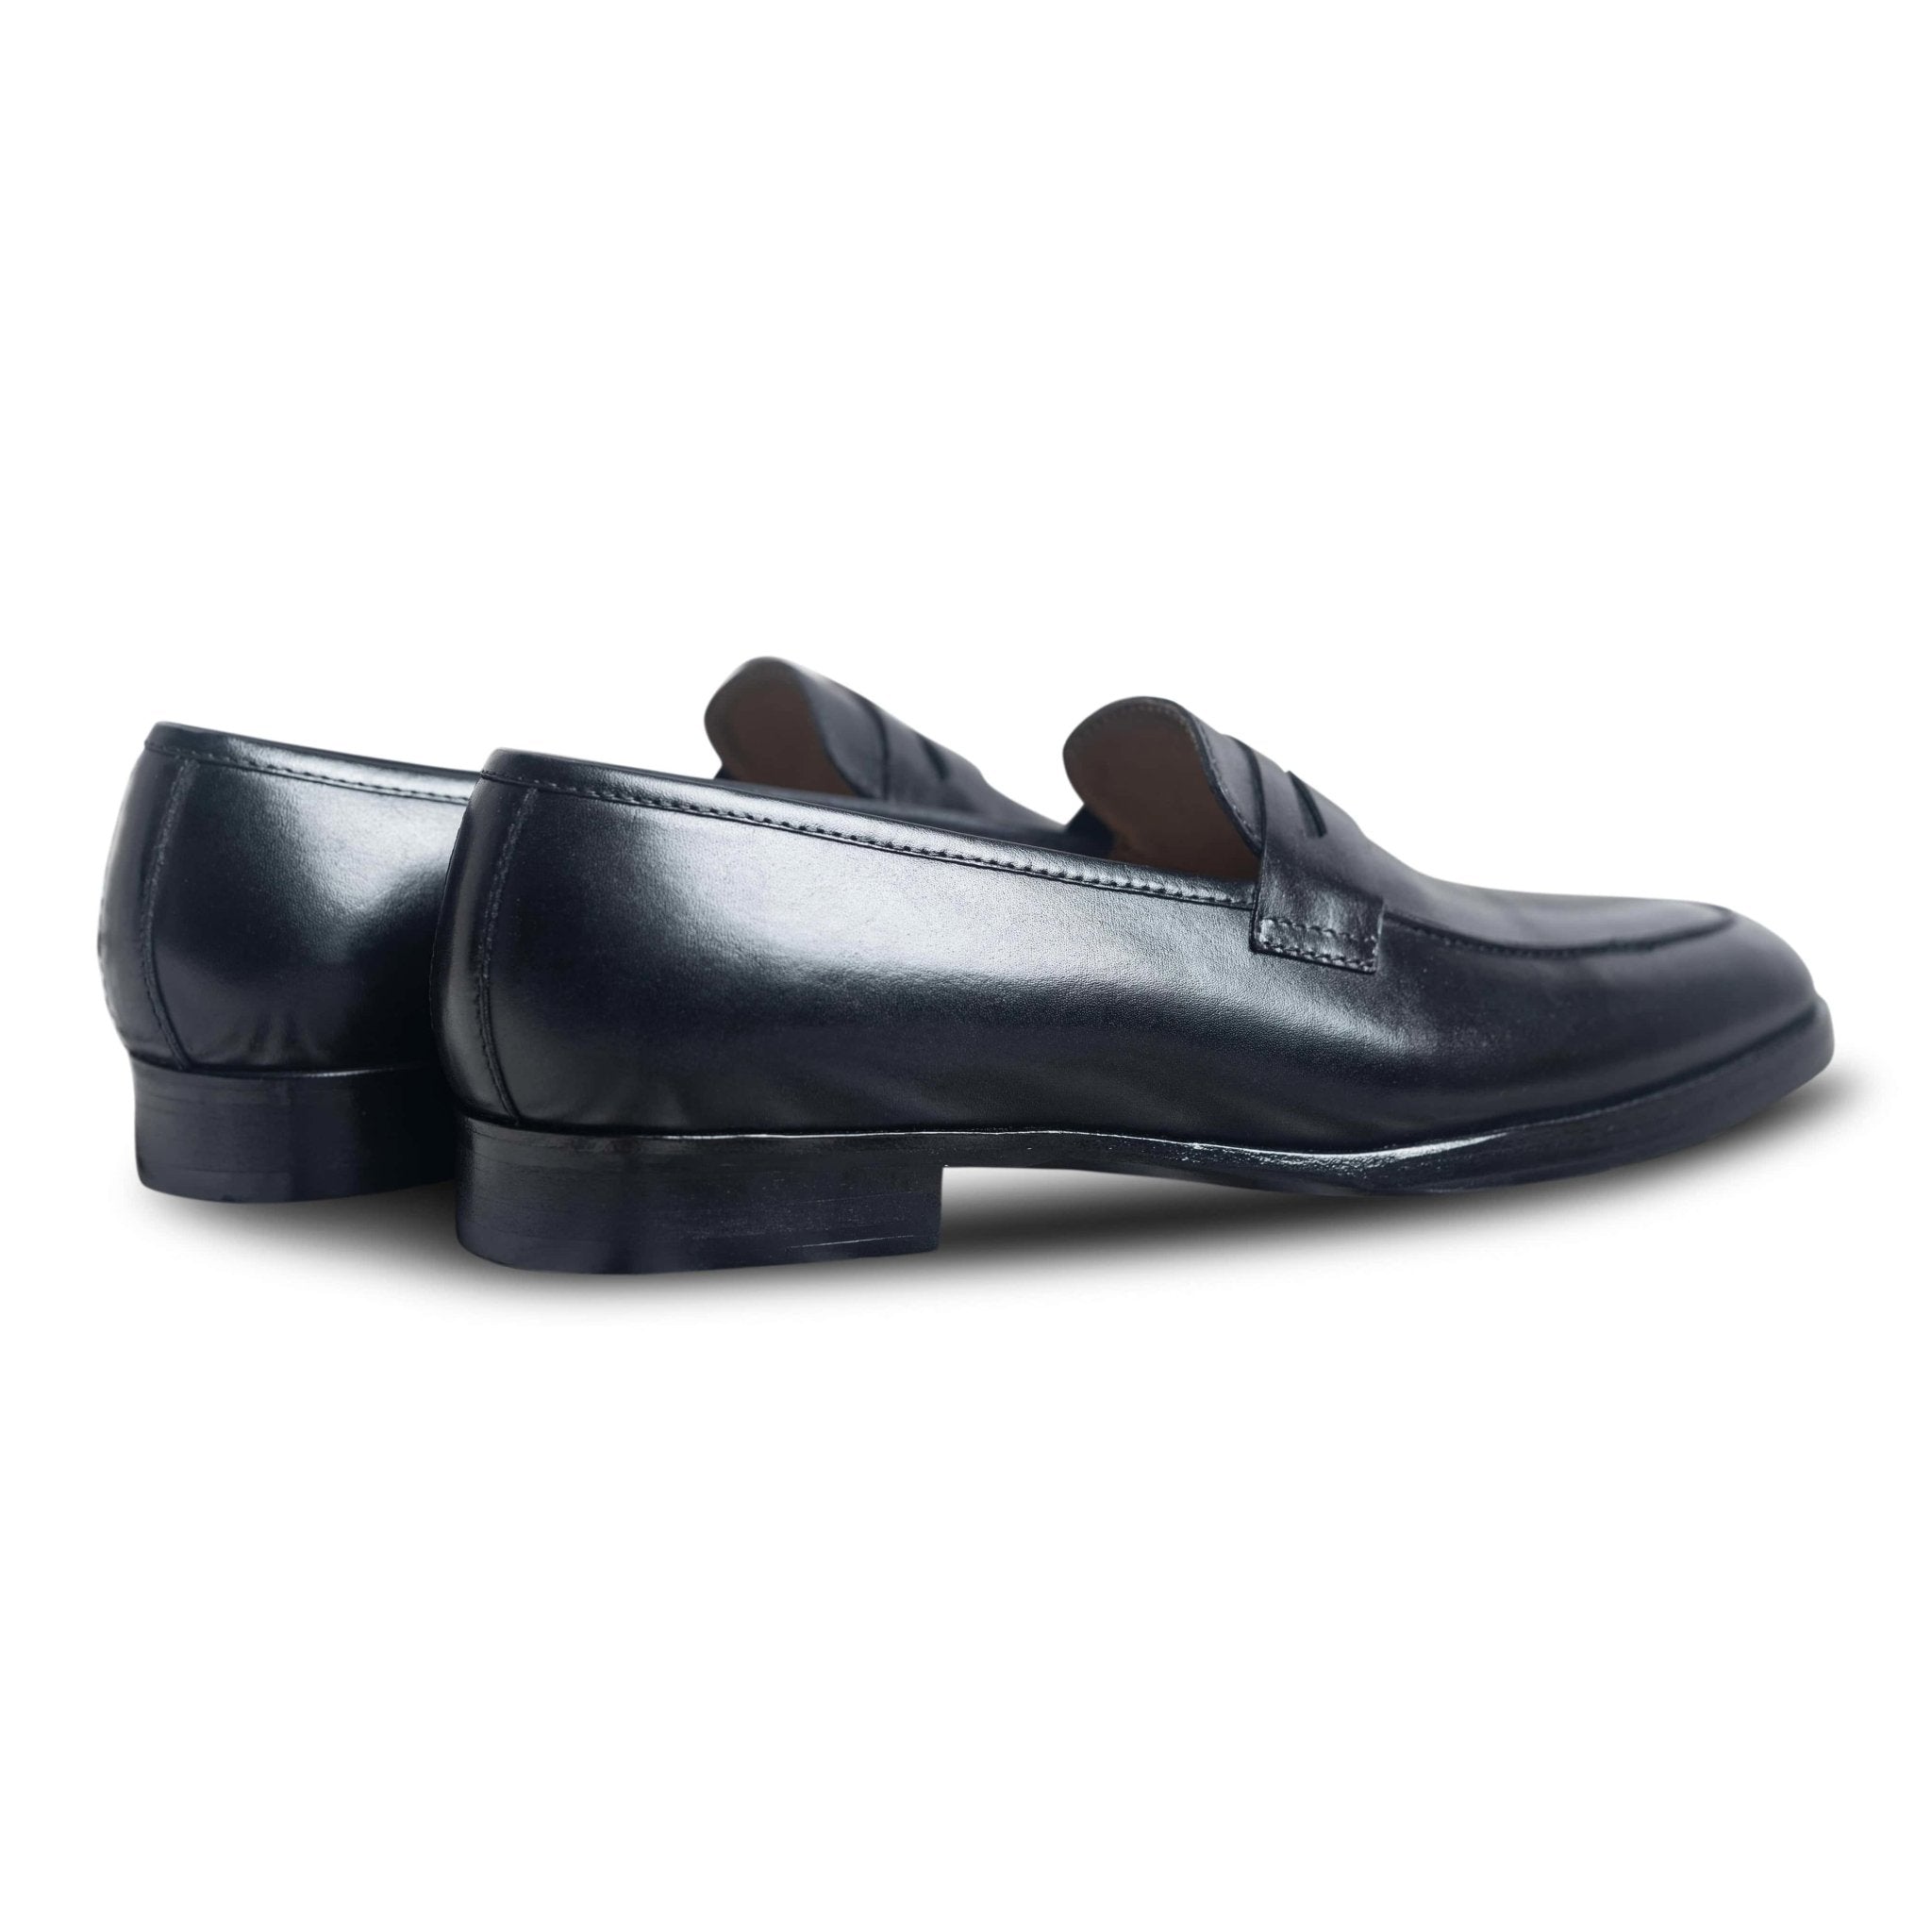 Noir | Black Leather Loafer for Men | dmodot